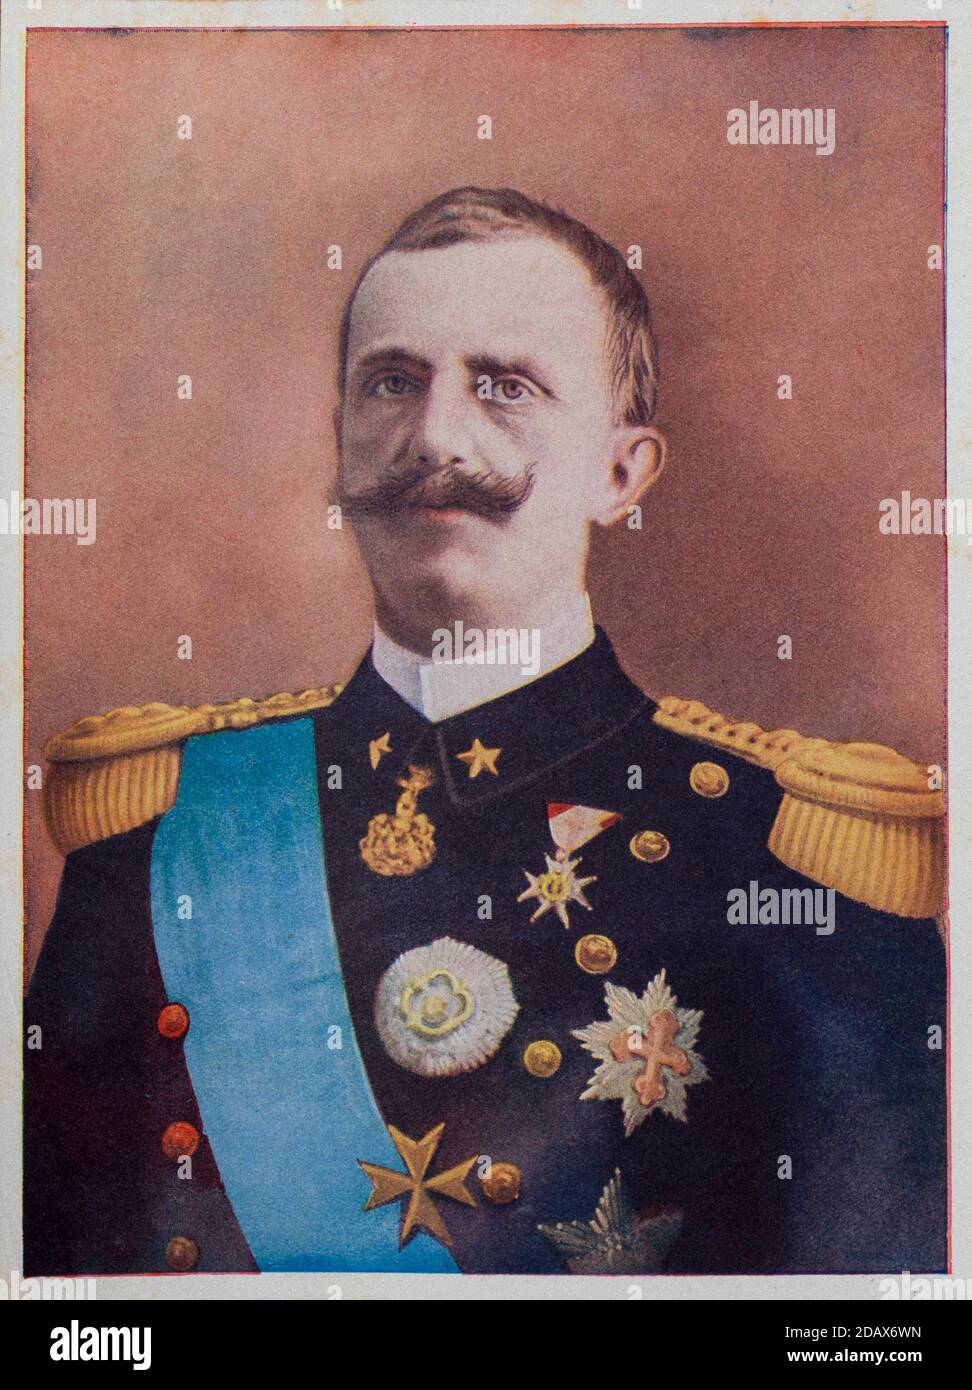 Photo rétro en couleur de Victor-Emmanuel III roi d'Italie. Victor Emmanuel III (Vittorio Emanuele III, 1869 – 1947) fut le roi d'Italie de 1900 unti Banque D'Images